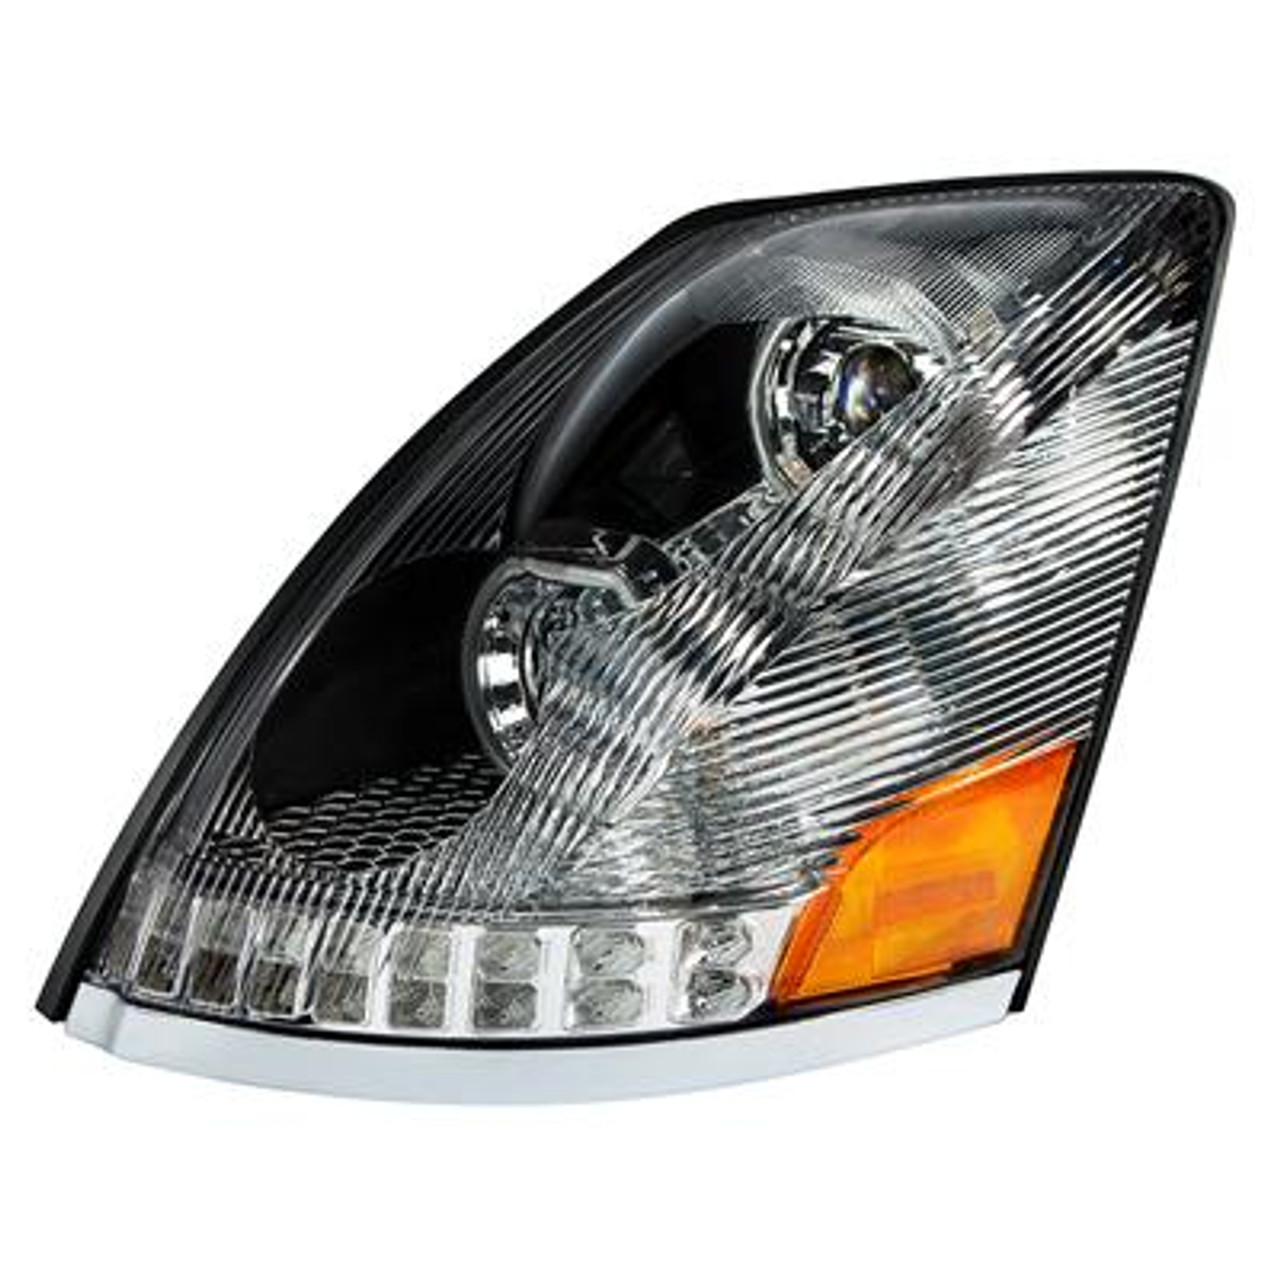 Chrome 10 LED Headlight for 2003-2017 Volvo VN/VNL - Driver Side